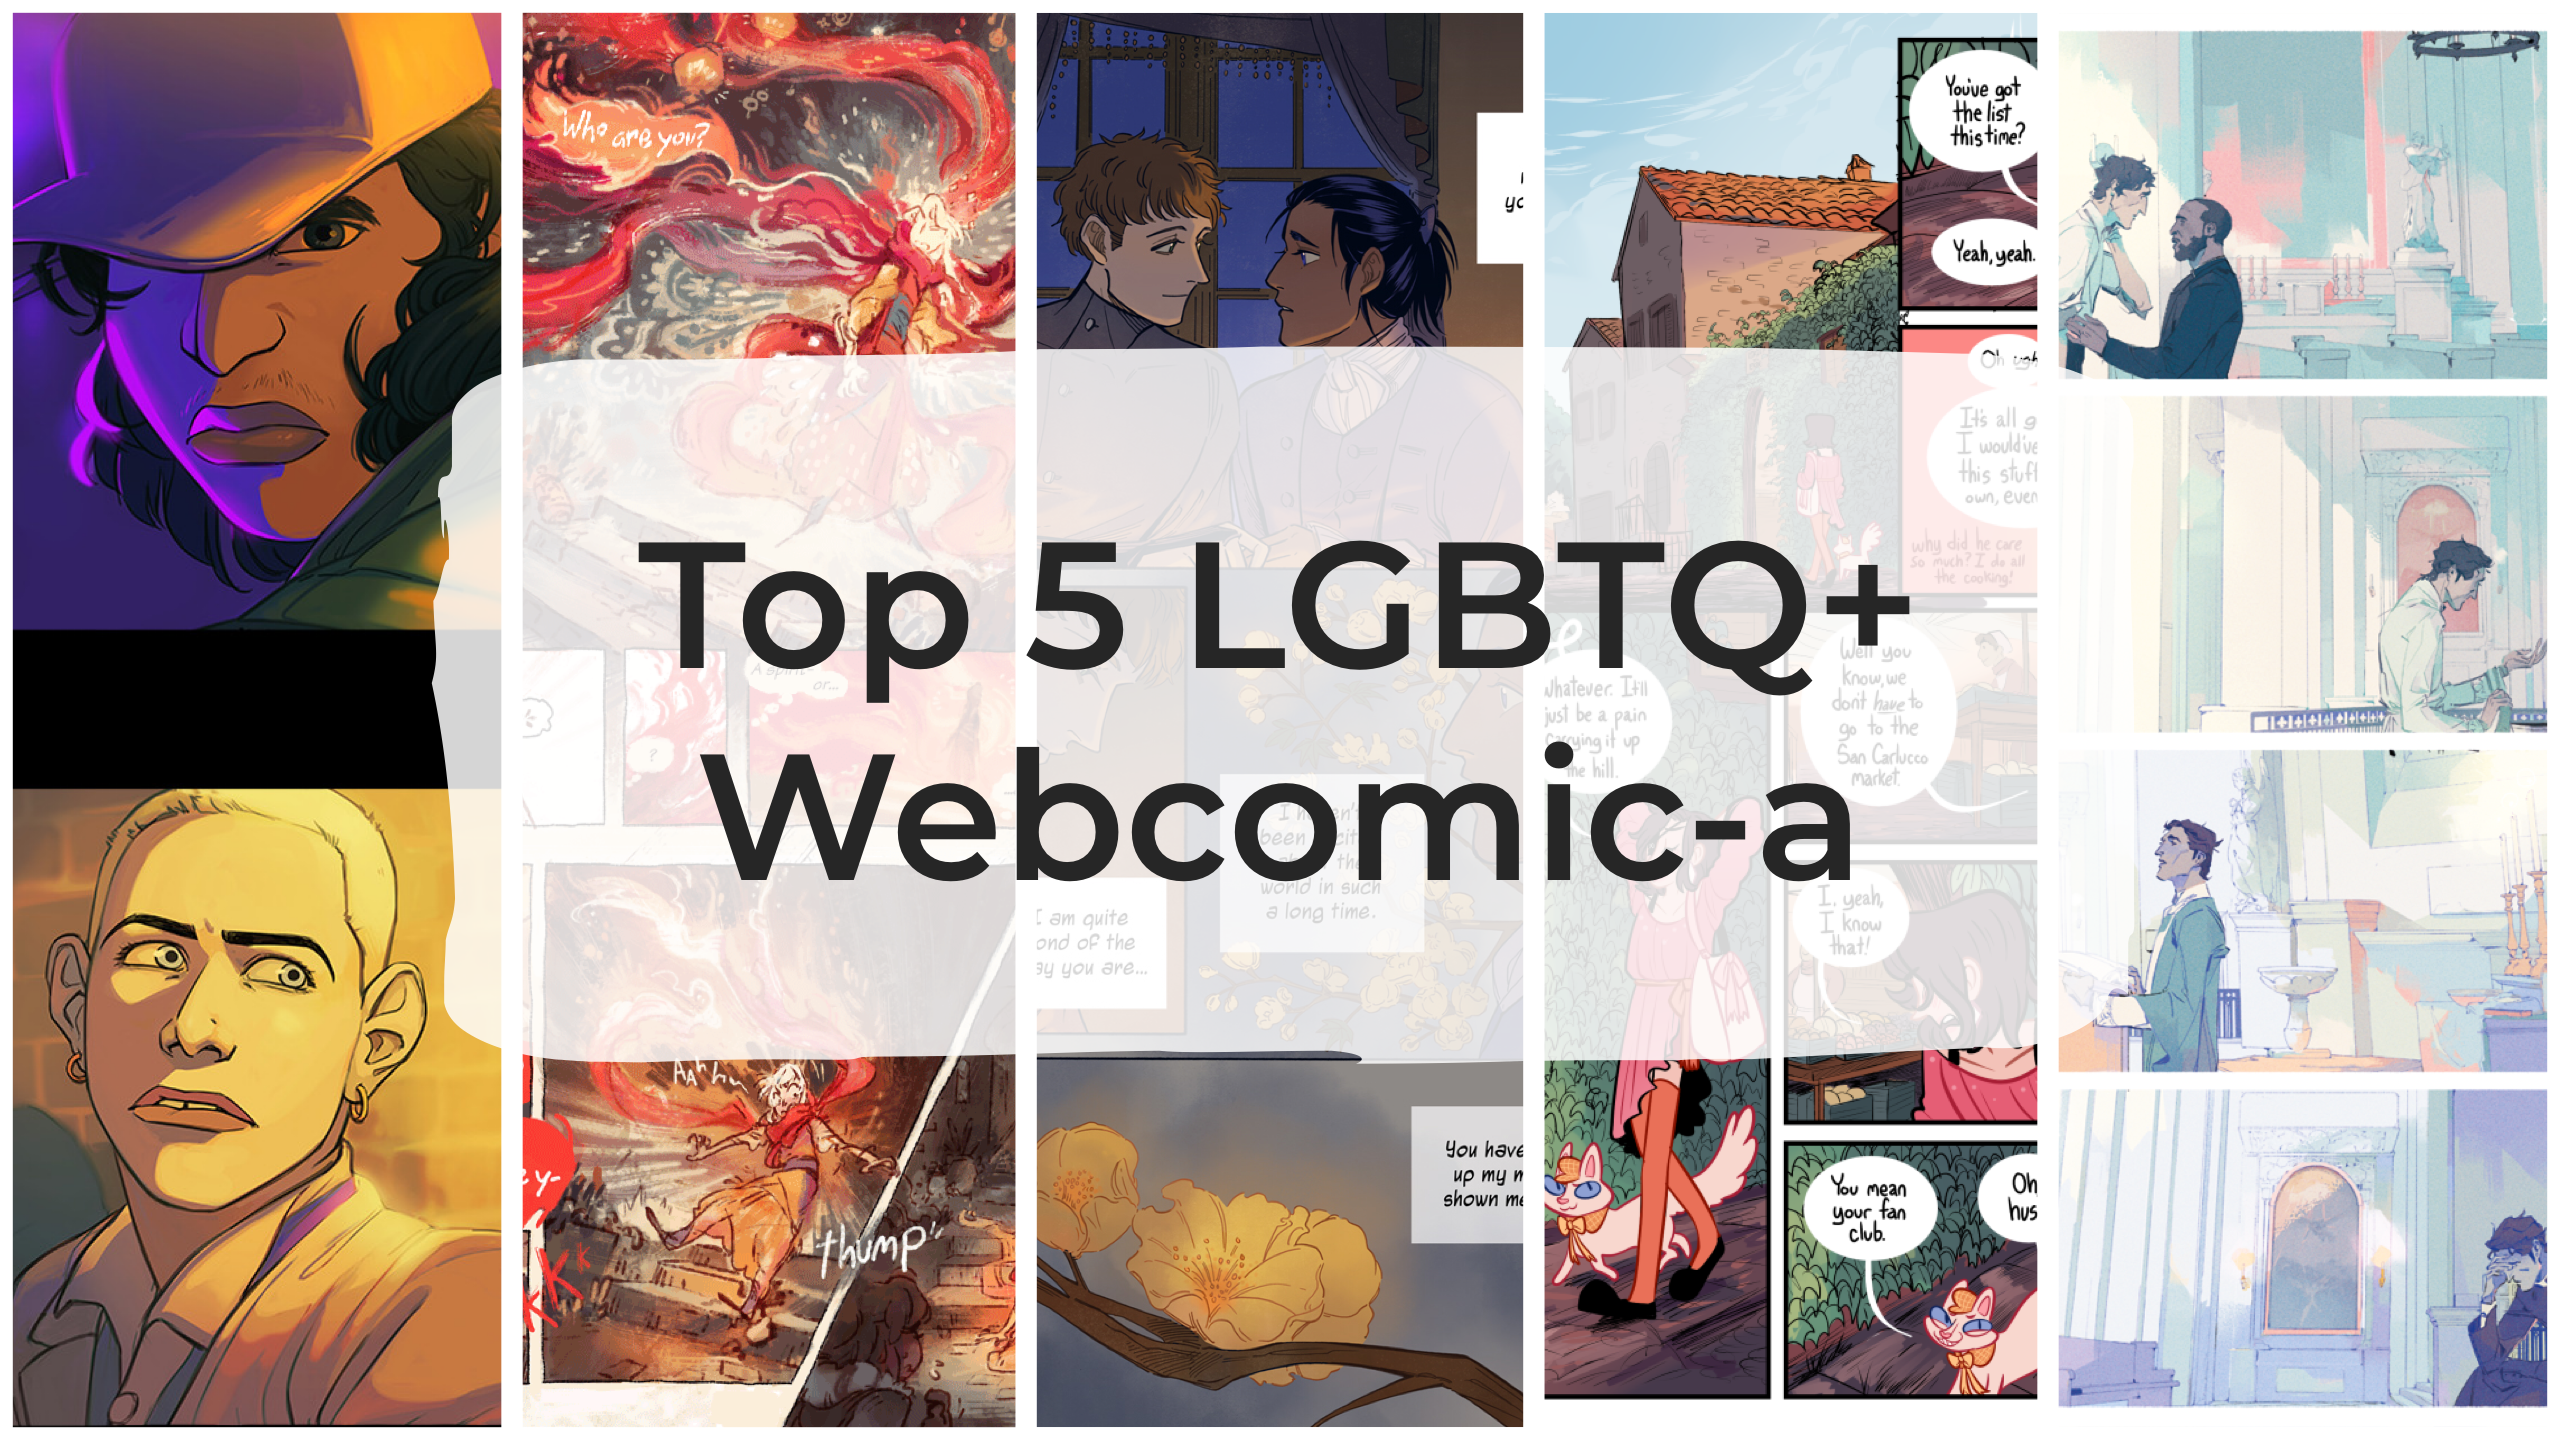 Top 5 LGBTQ+ Webcomic-a